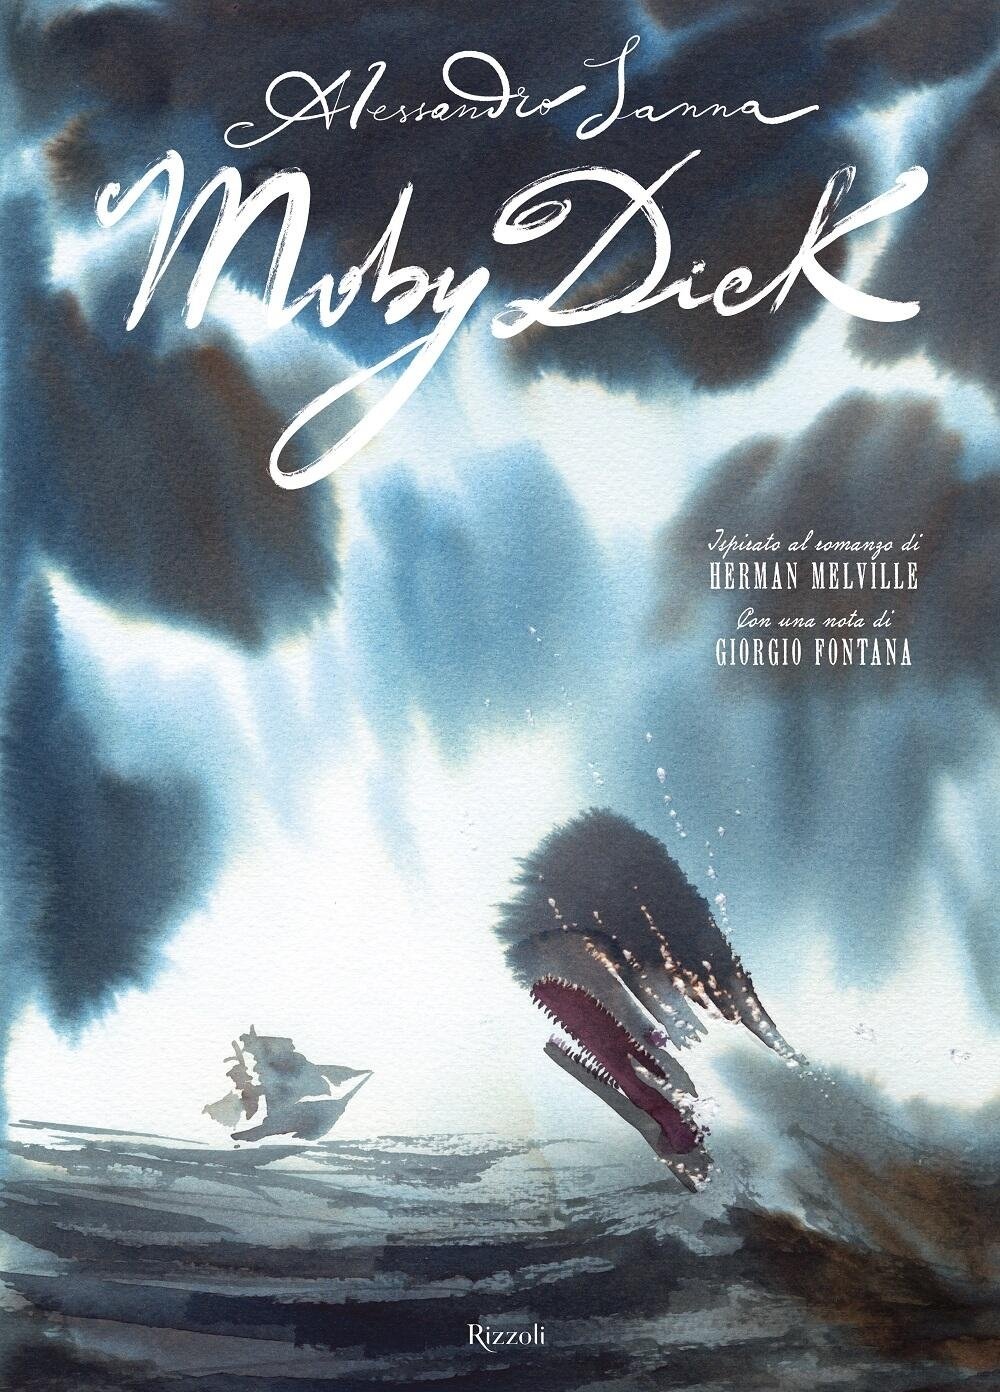 Alessandro Sanna – Moby Dick (Rizzoli, Milano 2021)